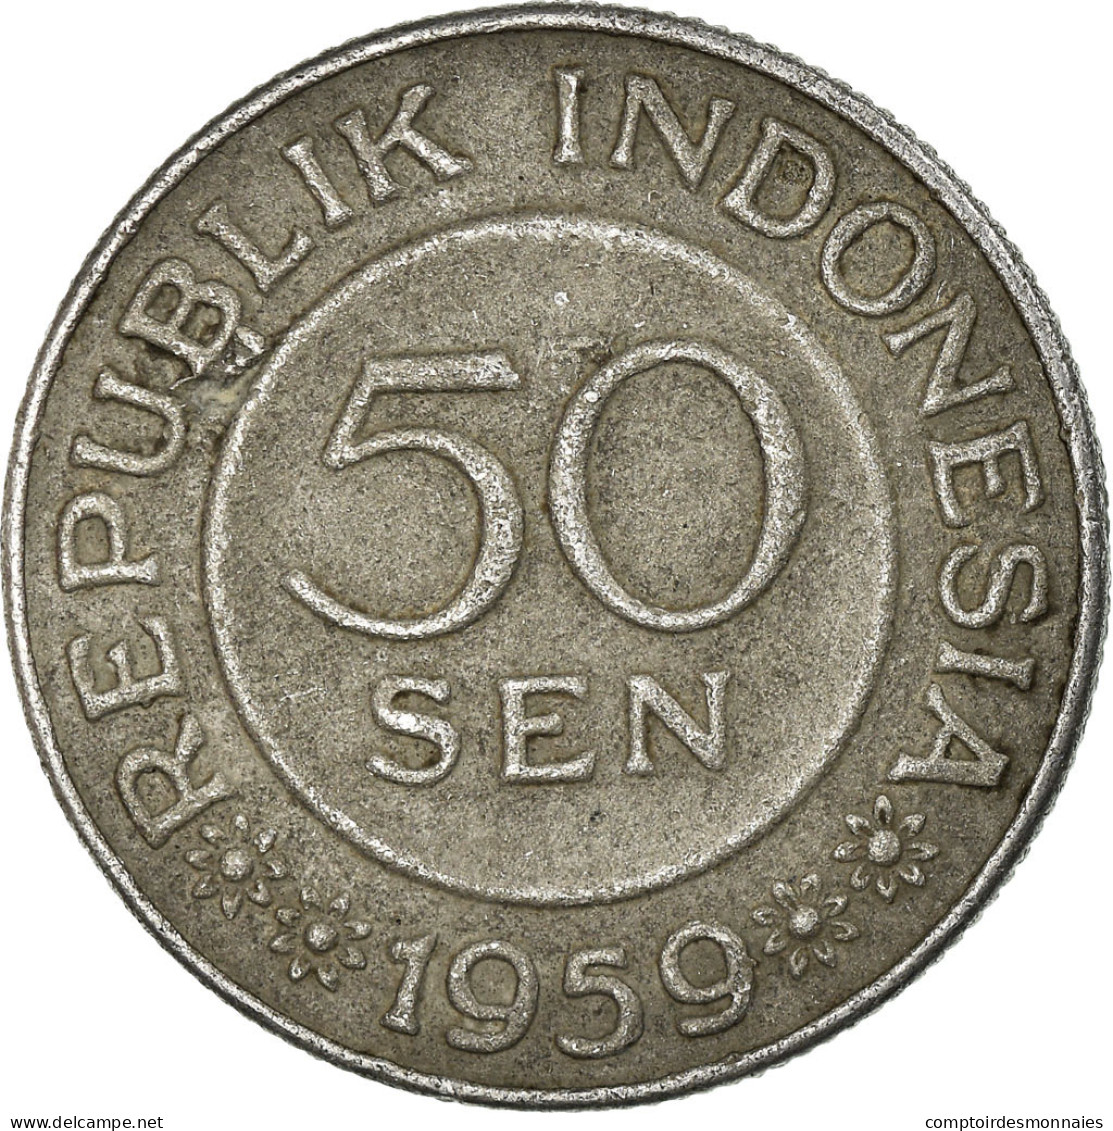 Monnaie, Indonésie, 50 Sen, 1959, TTB, Aluminium, KM:14 - Indonesia